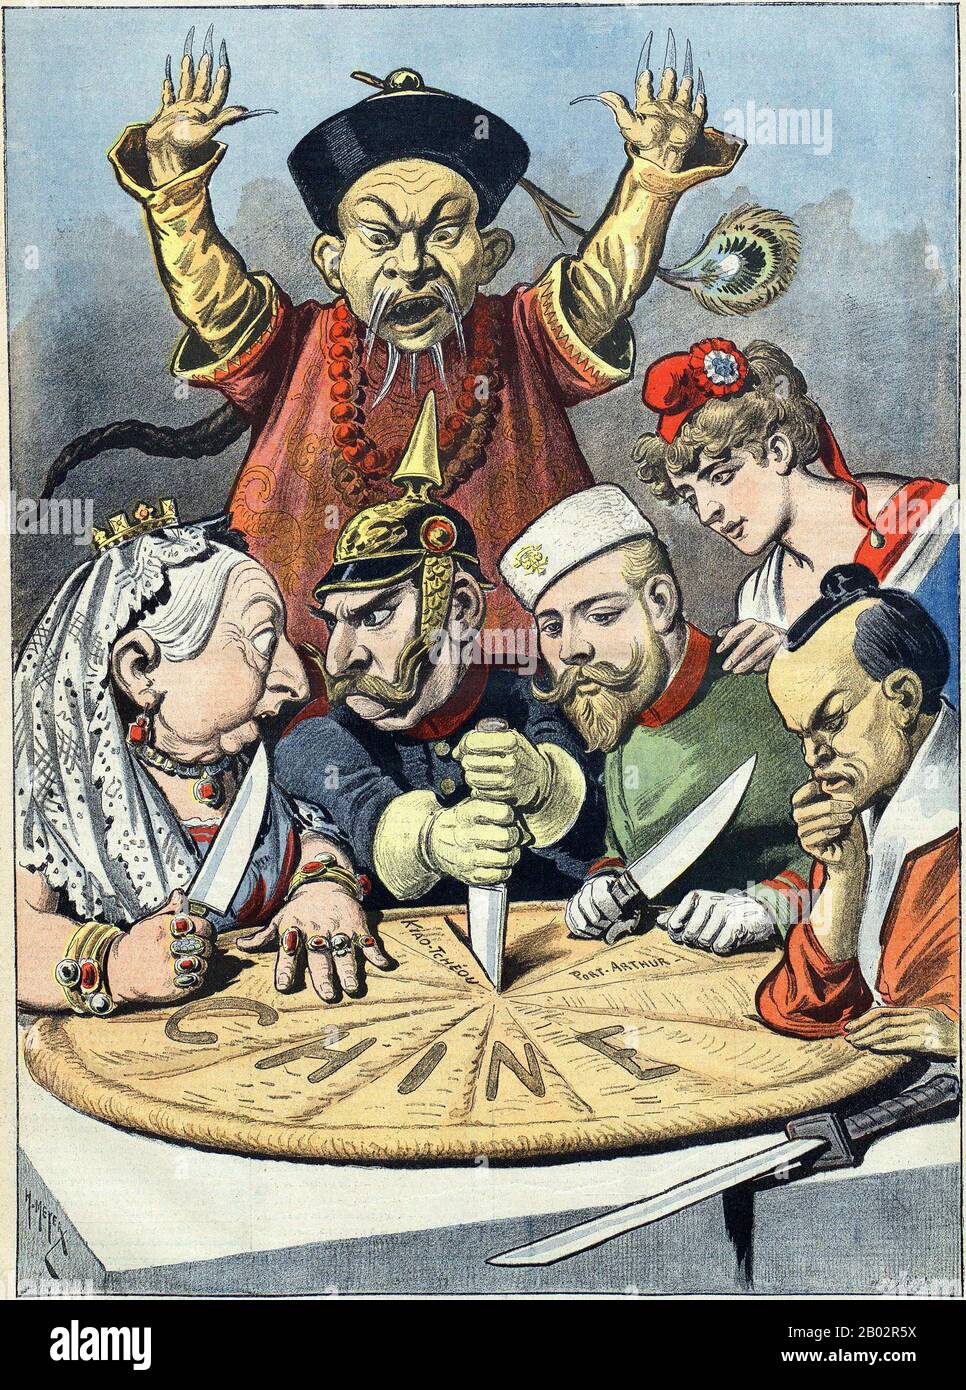 In dieser französischen politischen Karikatur aus dem Jahr 1898 wird ein Gebäck, das China repräsentiert, zwischen Karikaturen von Königin Victoria des Vereinigten Königreichs und Wilhelm II. Von Deutschland (die mit Königin Victoria über einem Grenzlandstück quietscht, während sie ein Messer in die Torte schlittert, um aggressive deutsche Absichten zu signalisieren) geteilt. Anwesend sind auch der russische Nikolaus II., der ein bestimmtes Stück auspokant, die französische Mariannes (die diplomatisch als nicht an der Schnitzerei beteiligt gezeigt wird und als nahe an Nikolaus II. Dargestellt wird, als Erinnerung an die französisch-russische Allianz), und ein Samurai, der Japan vertritt. Stockfoto